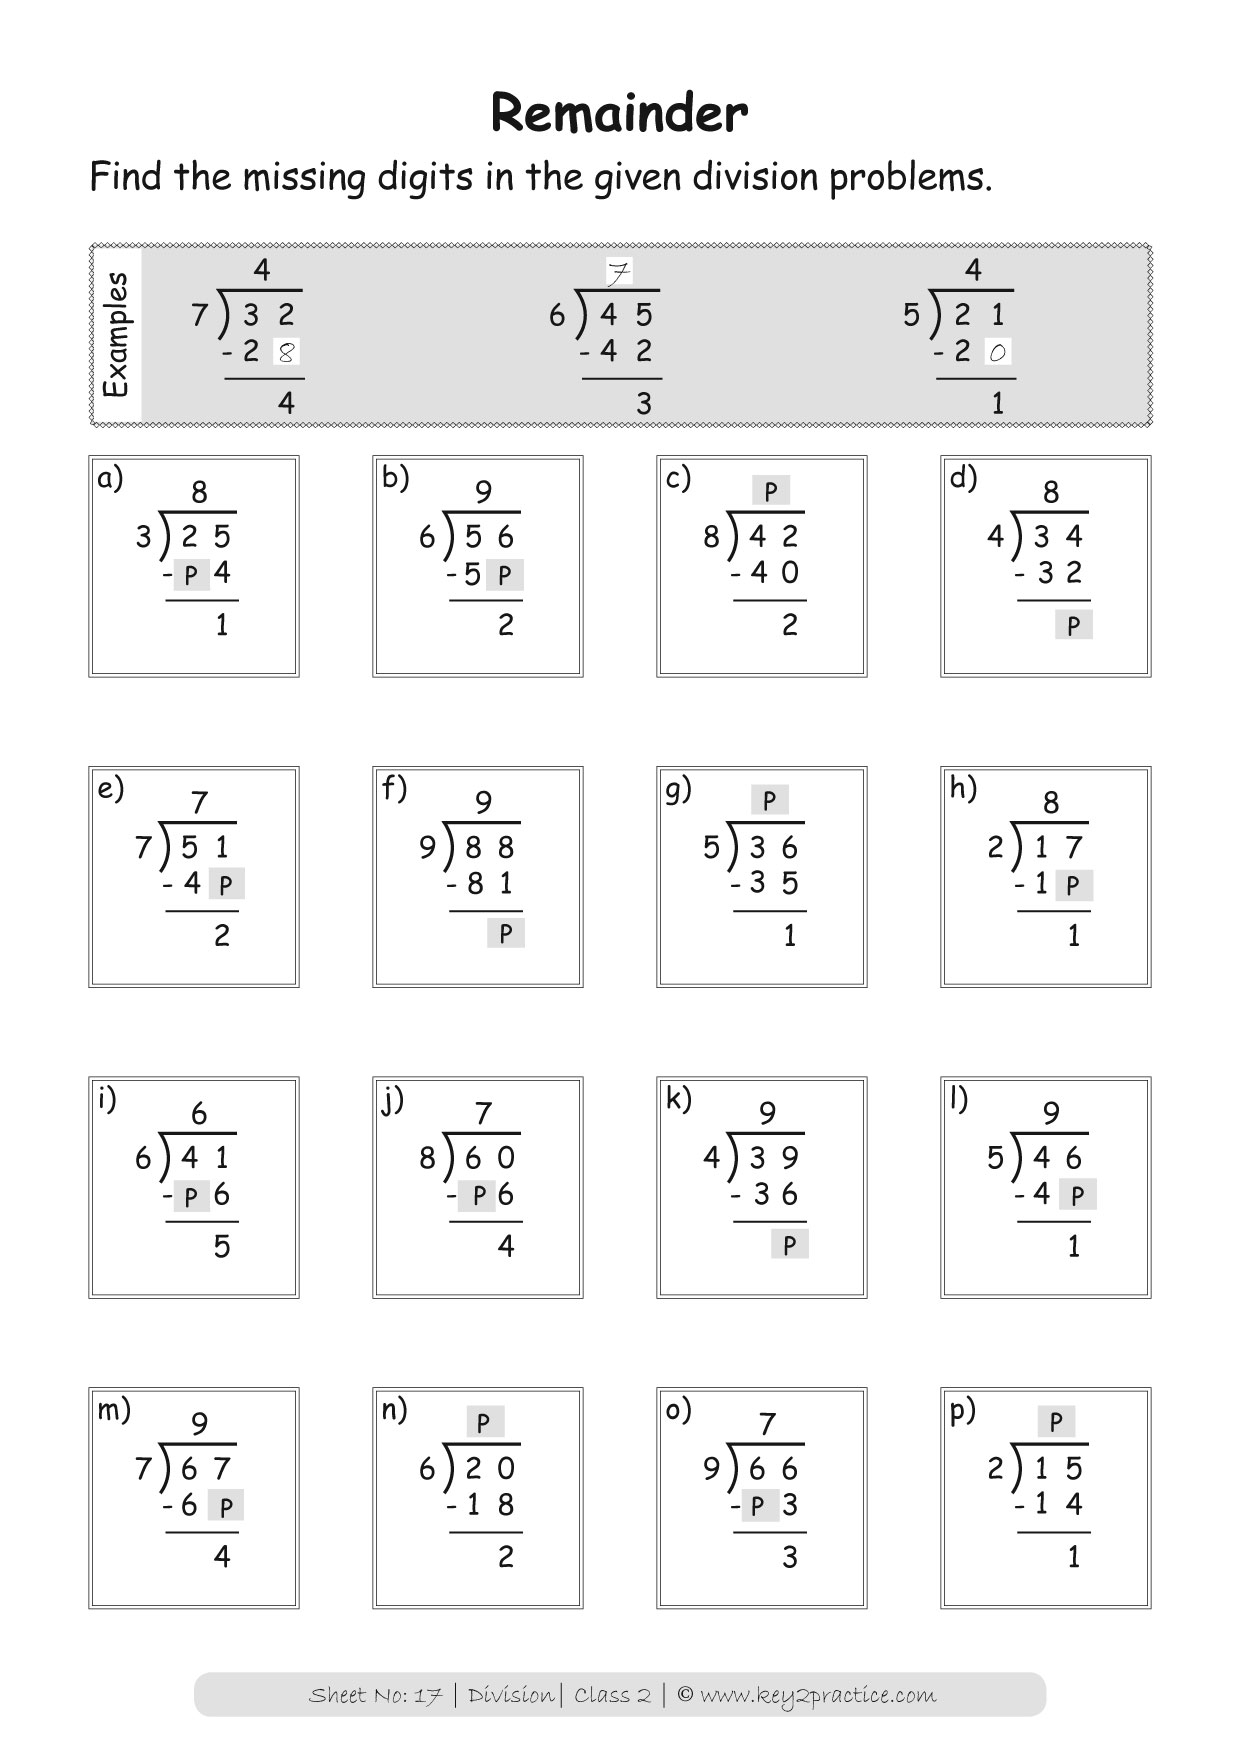 division-worksheets-grade-2-i-maths-key2practice-workbooks